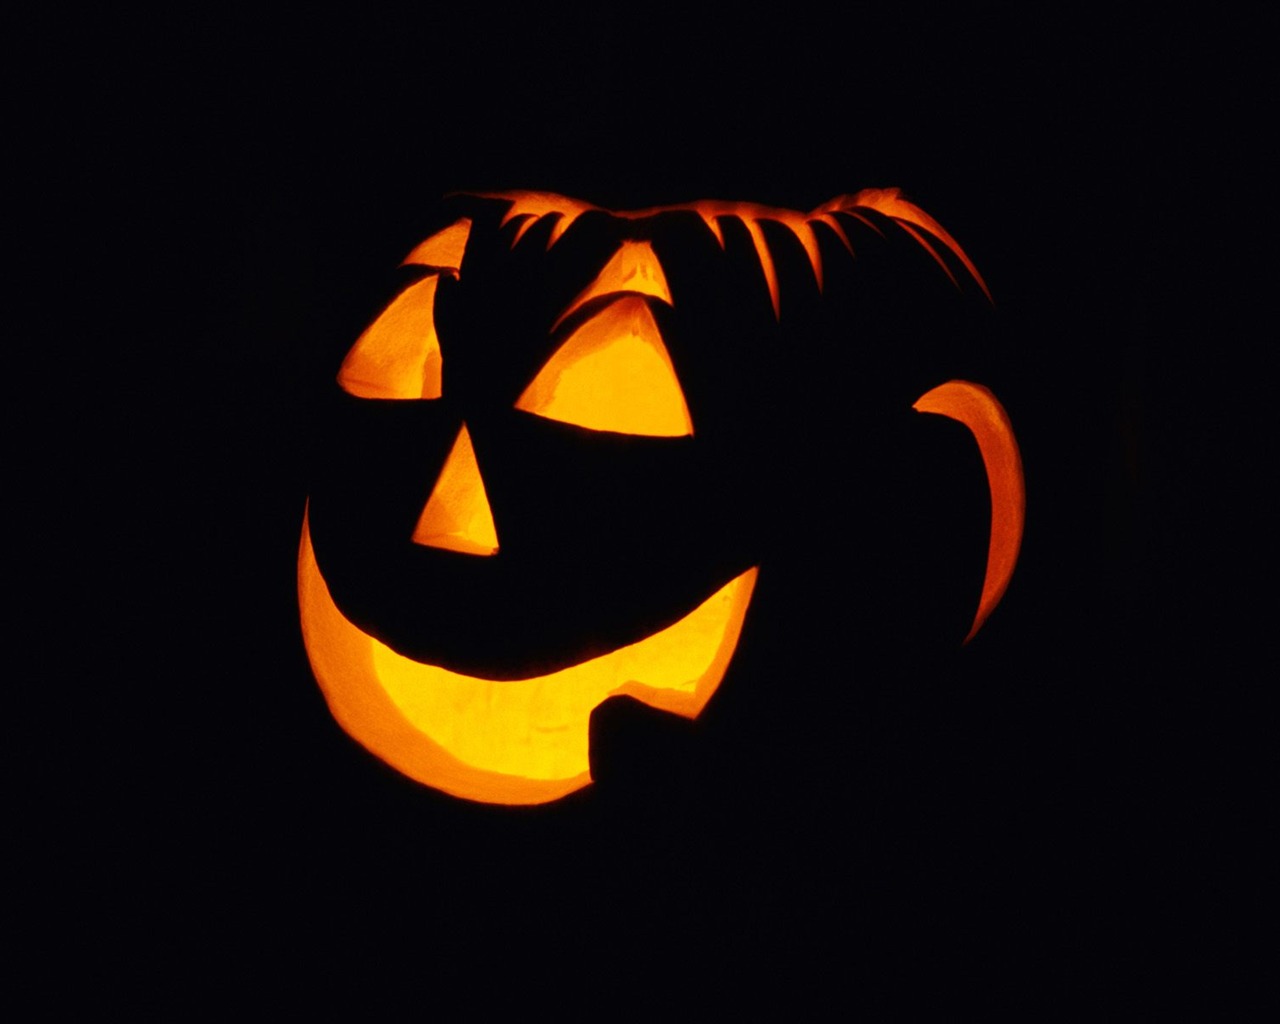 Fondos de Halloween temáticos (1) #15 - 1280x1024